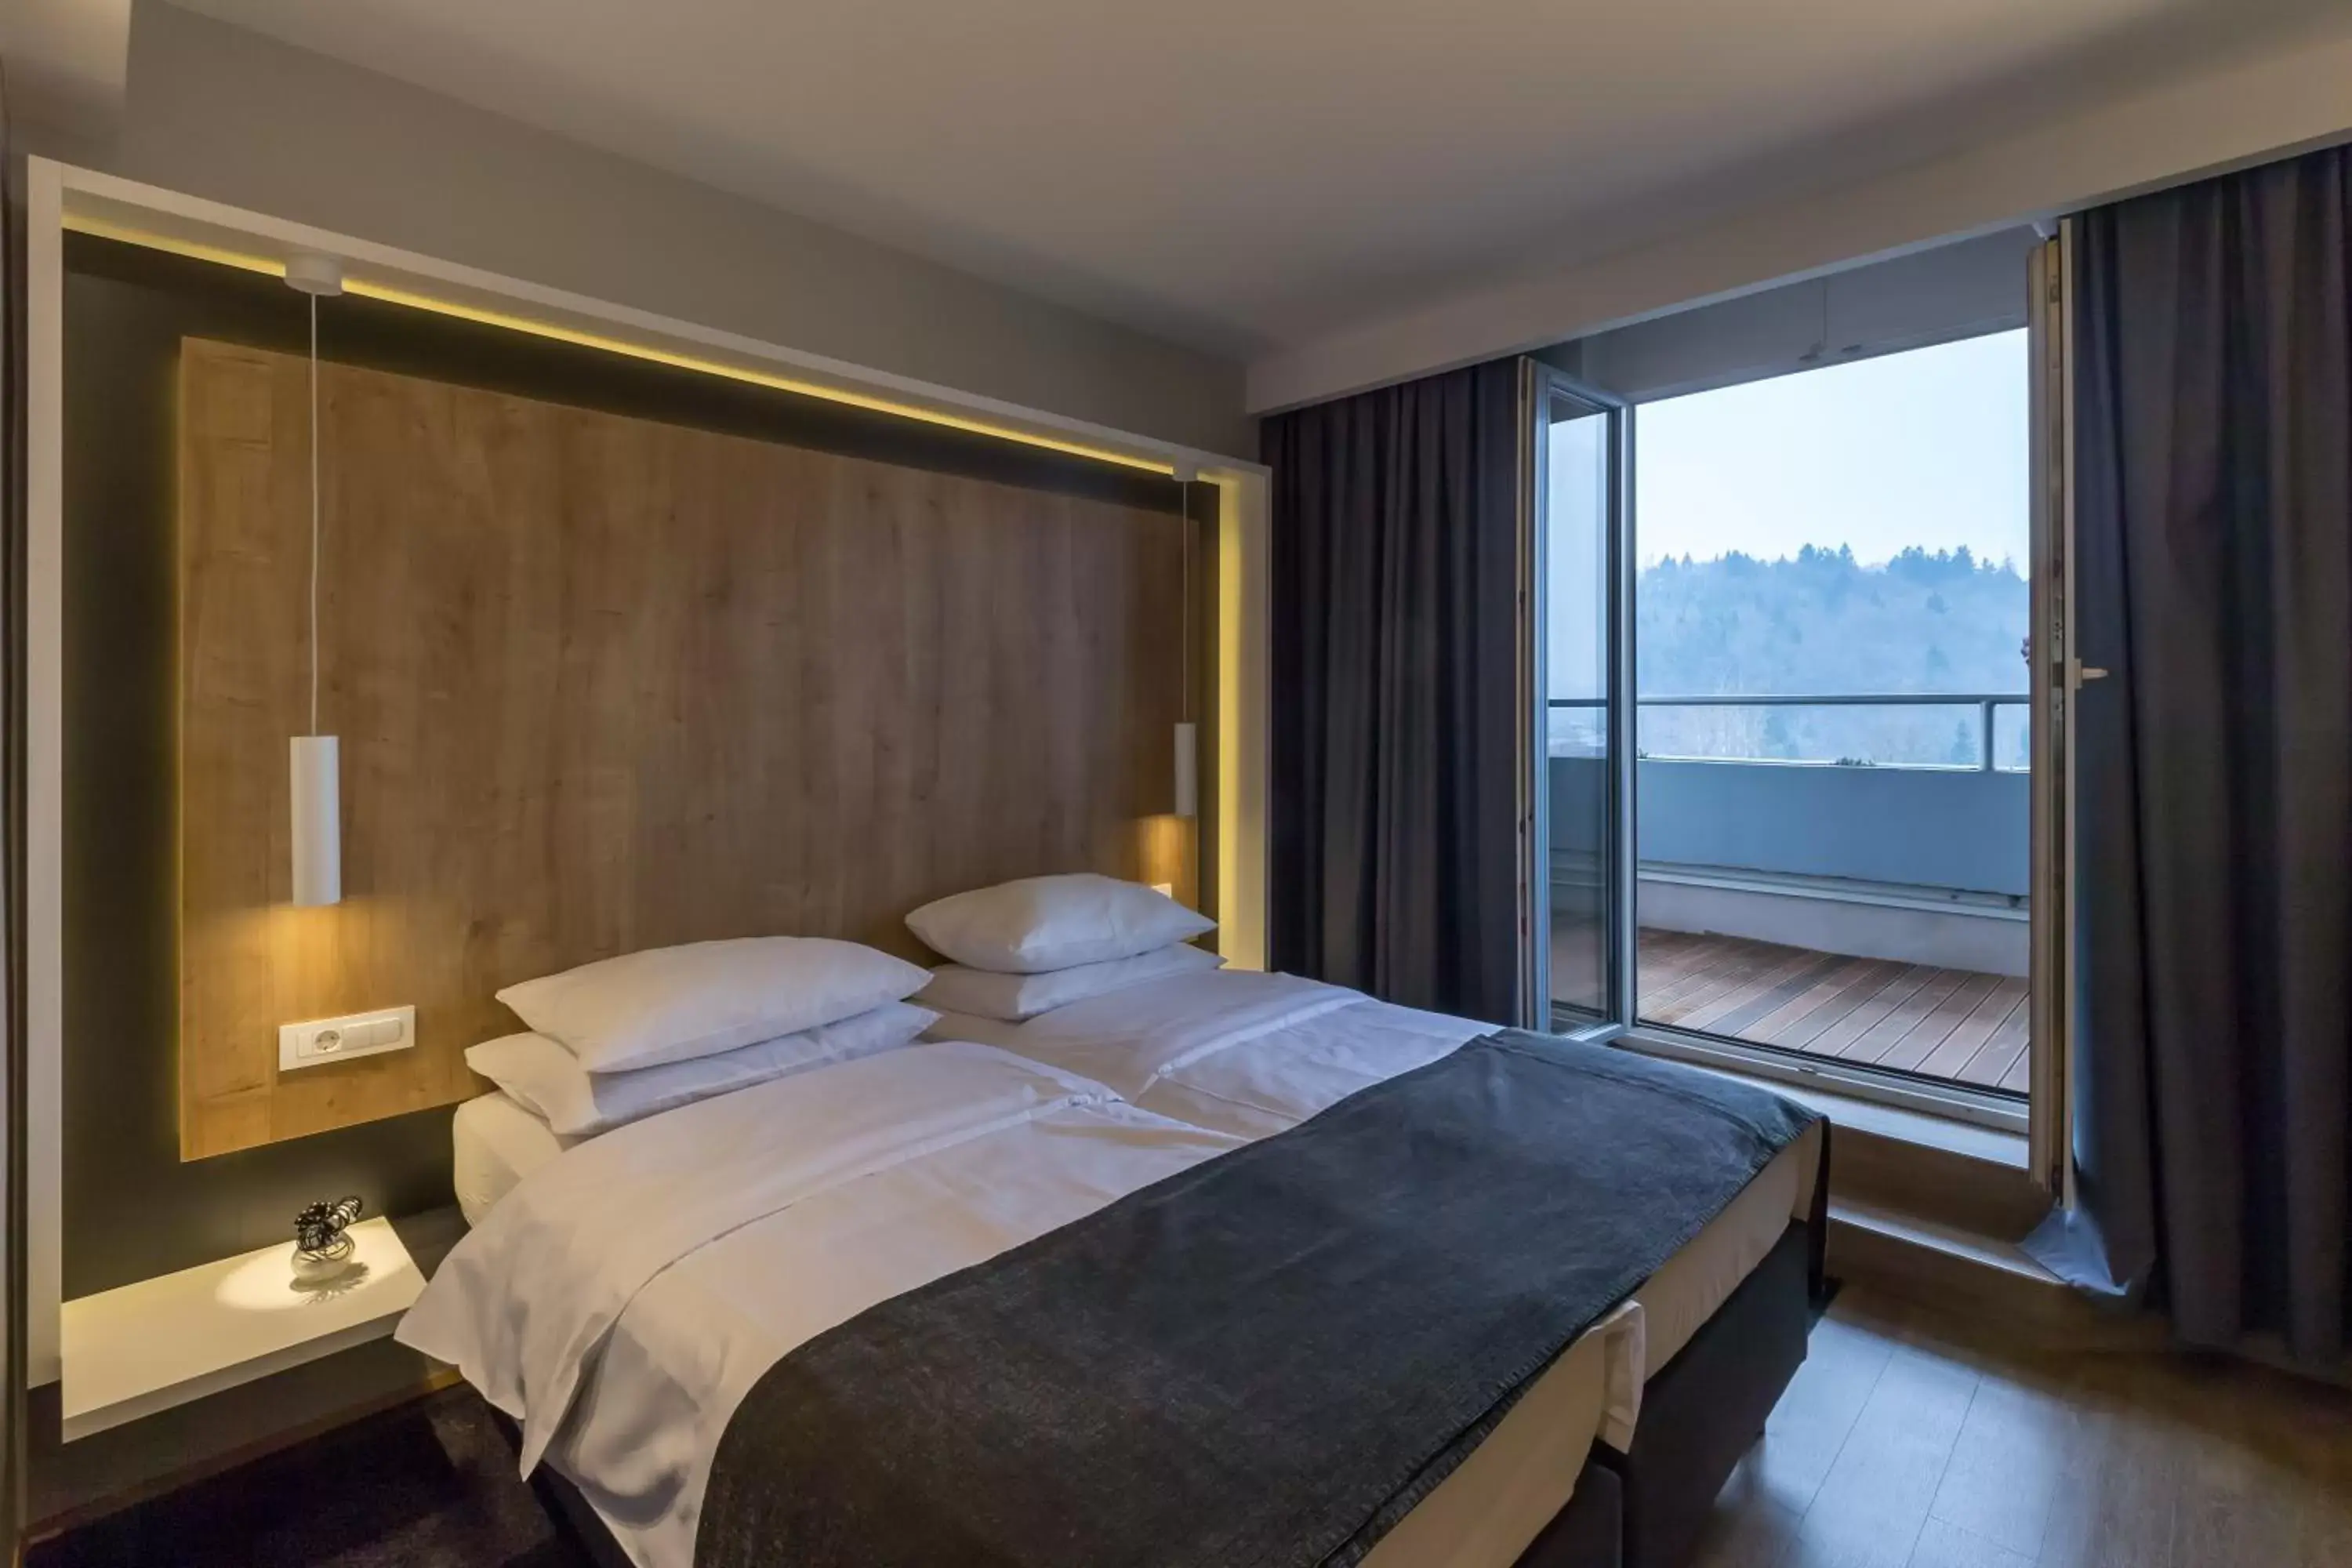 Bedroom, Bed in M Hotel